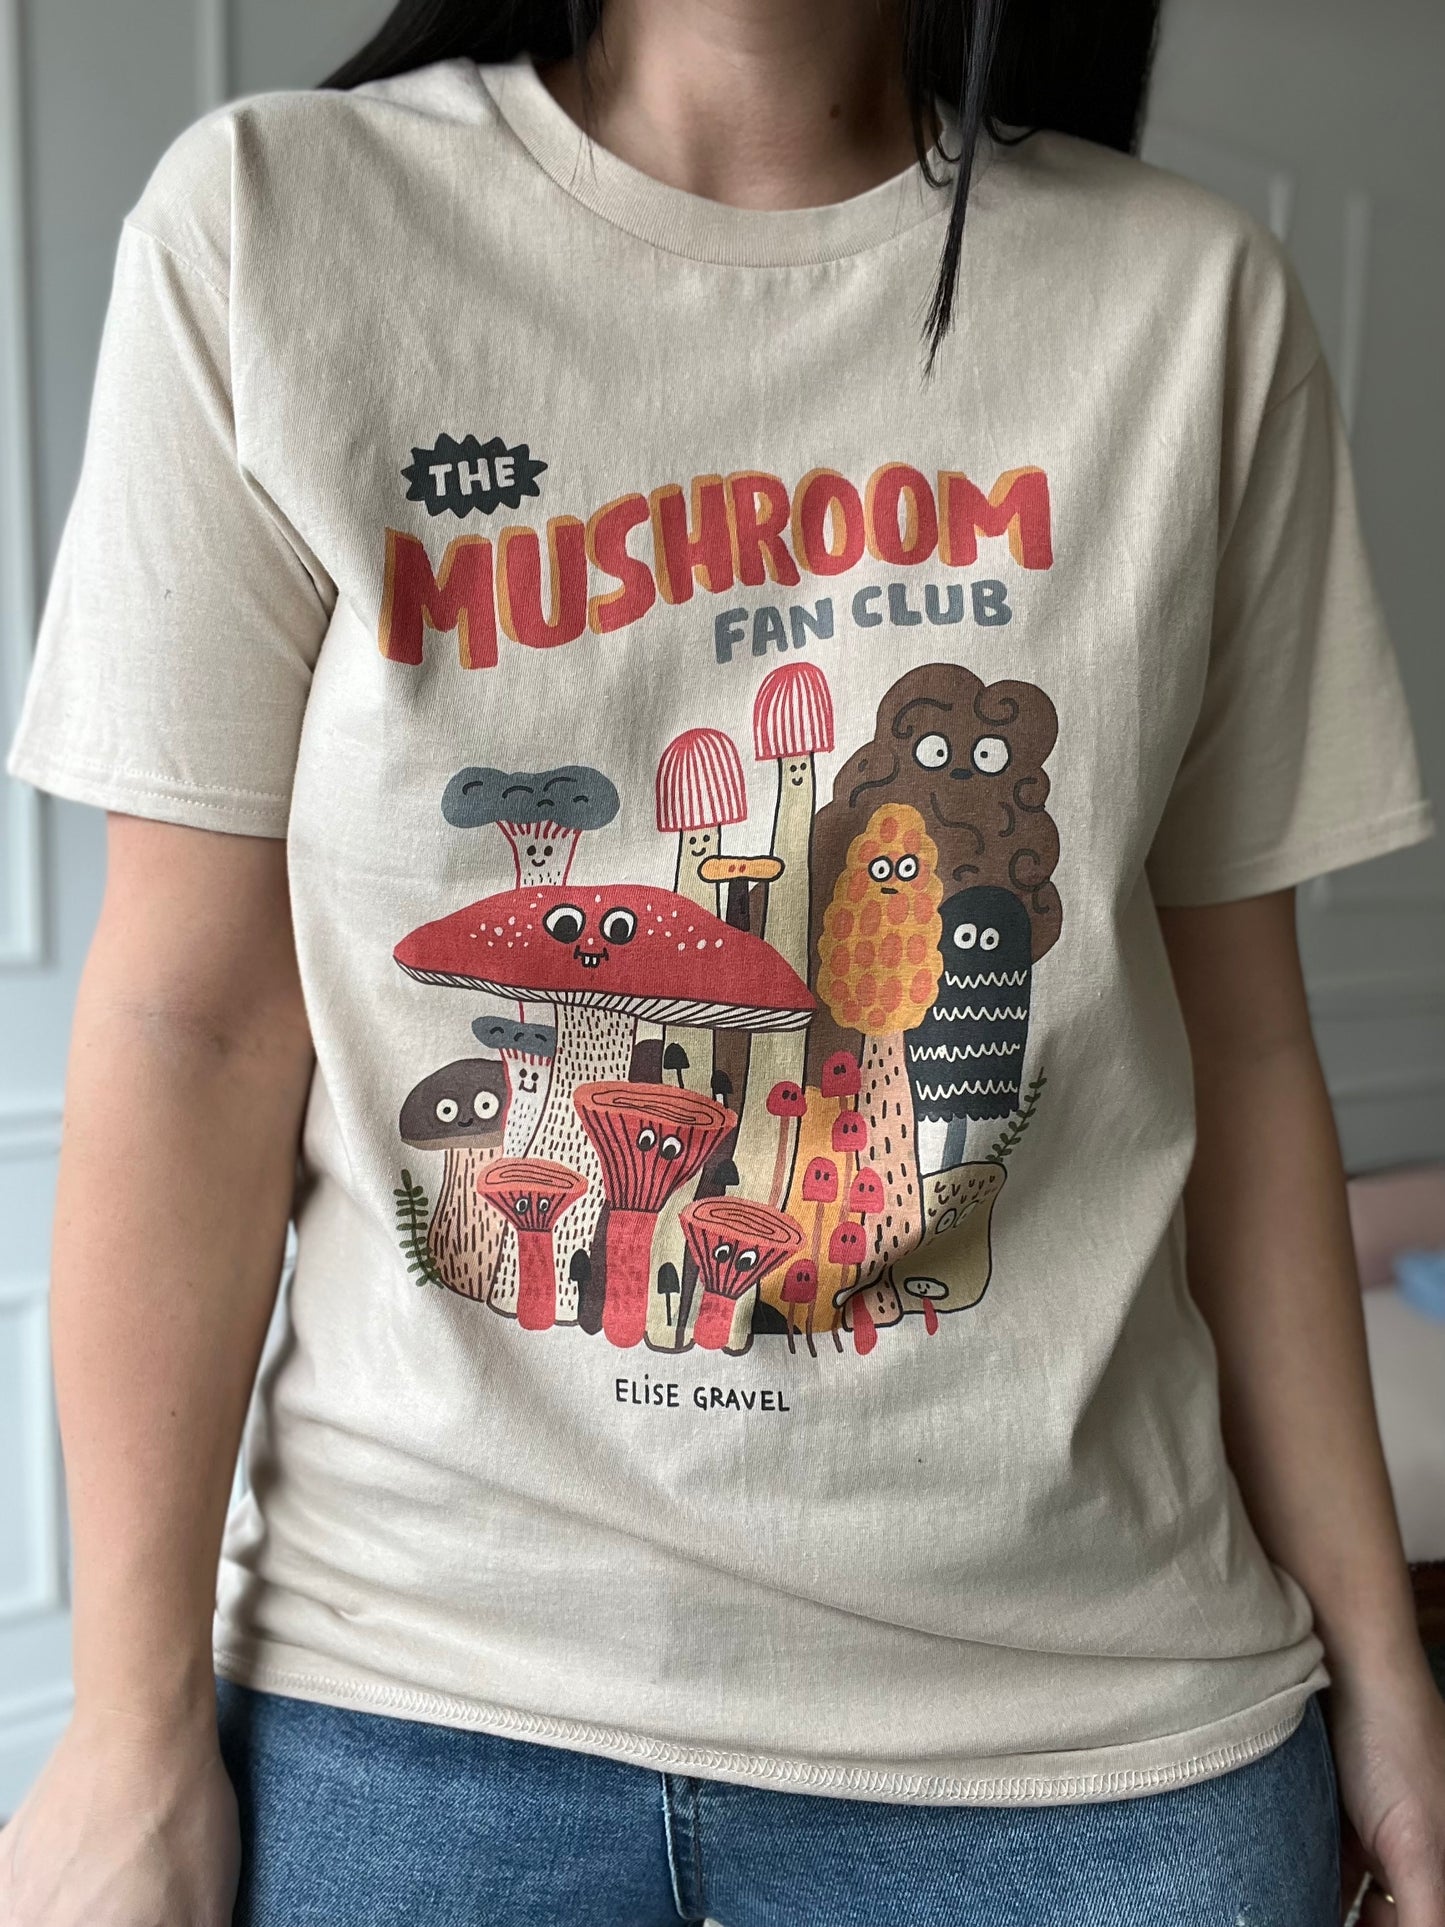 Mushroom Club Tee - Size L